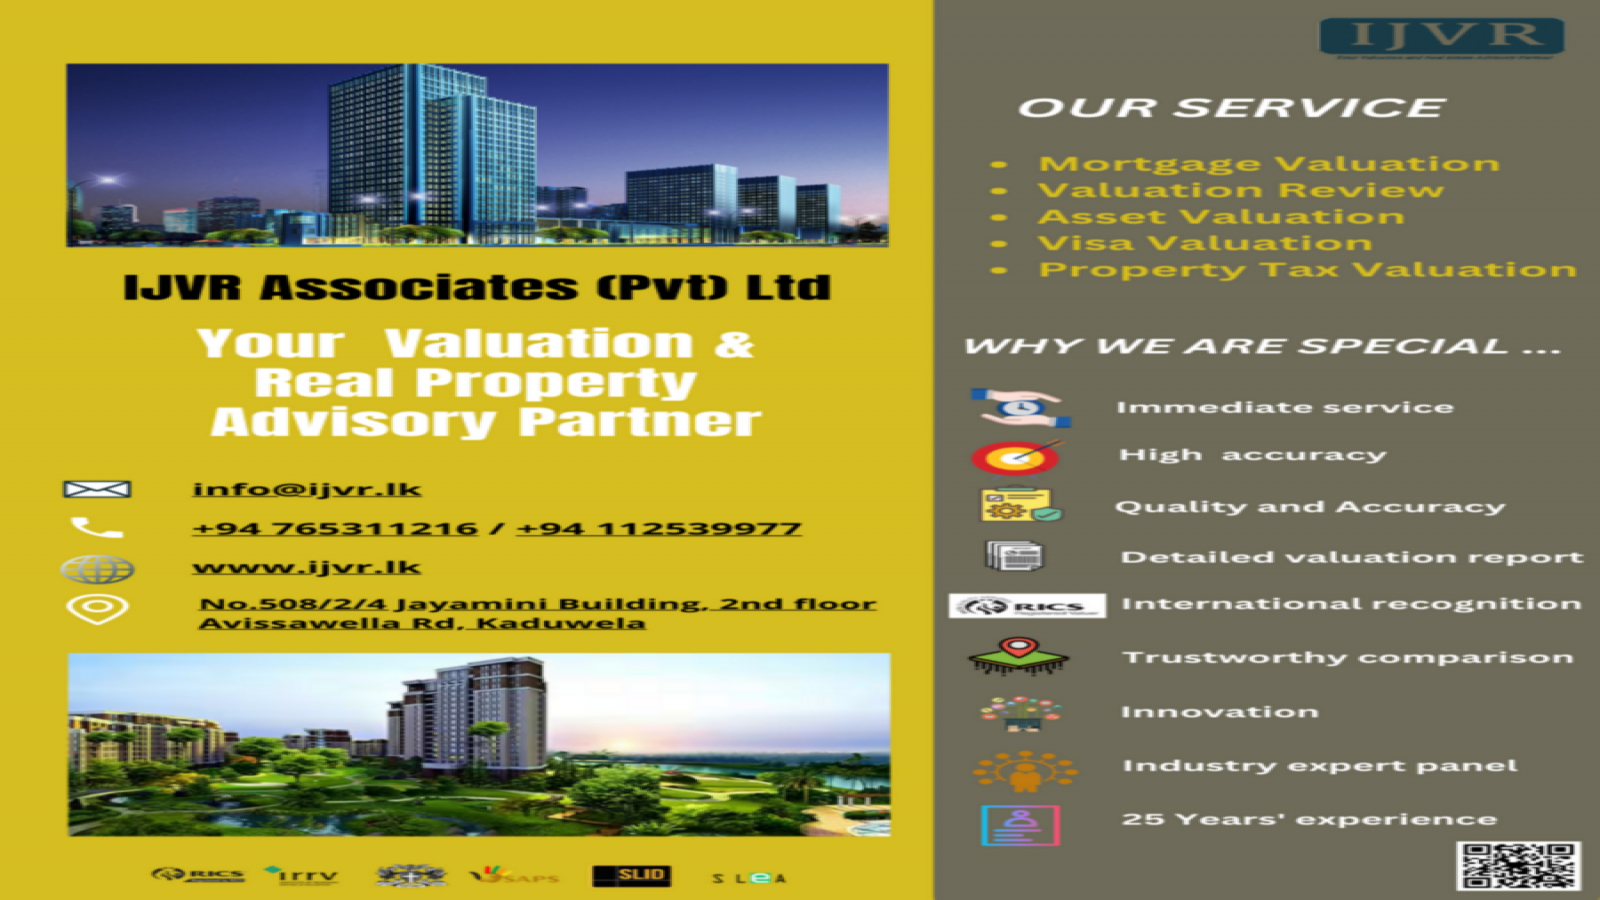 IJVR Associates (Pvt) Ltd